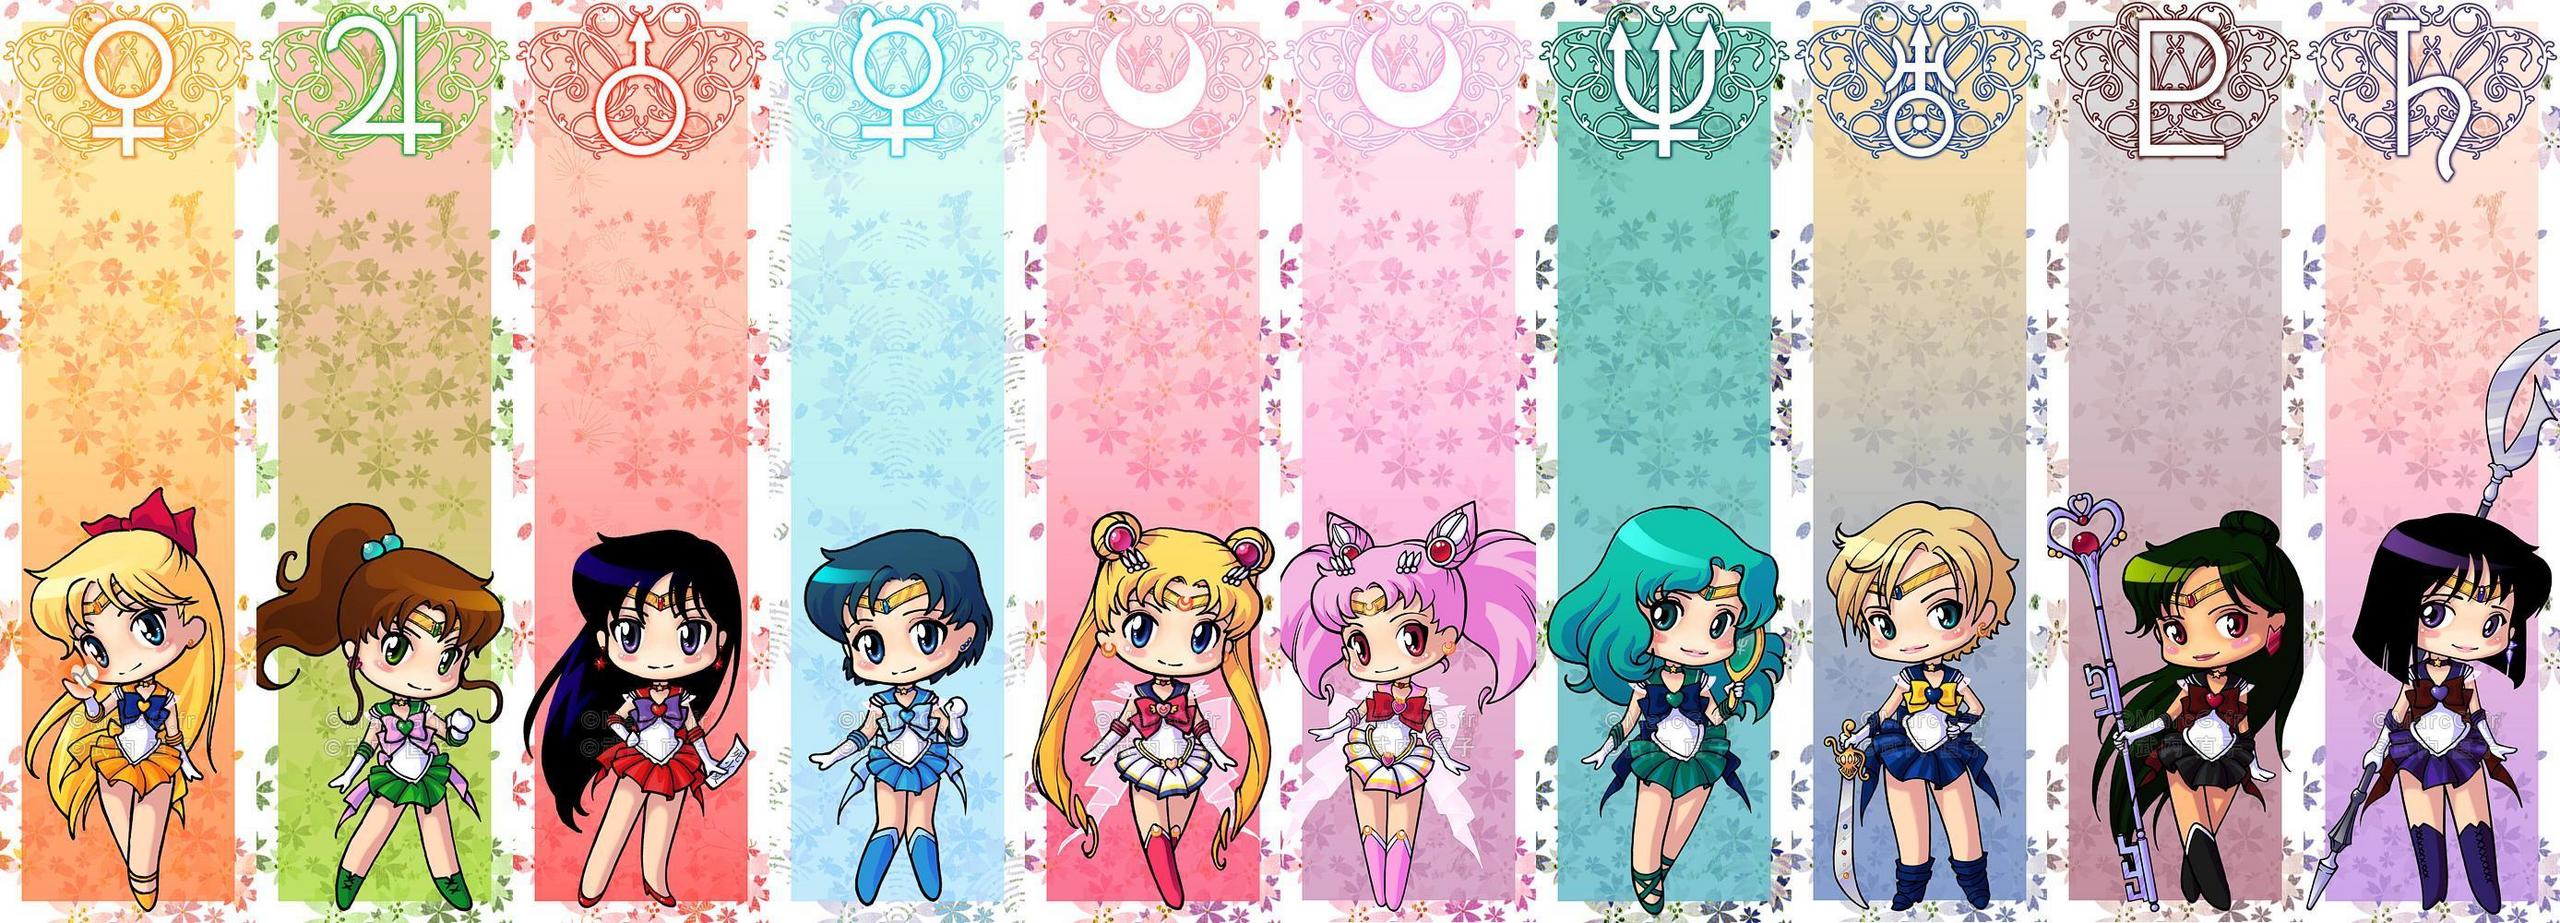 Sailor Moon facebook